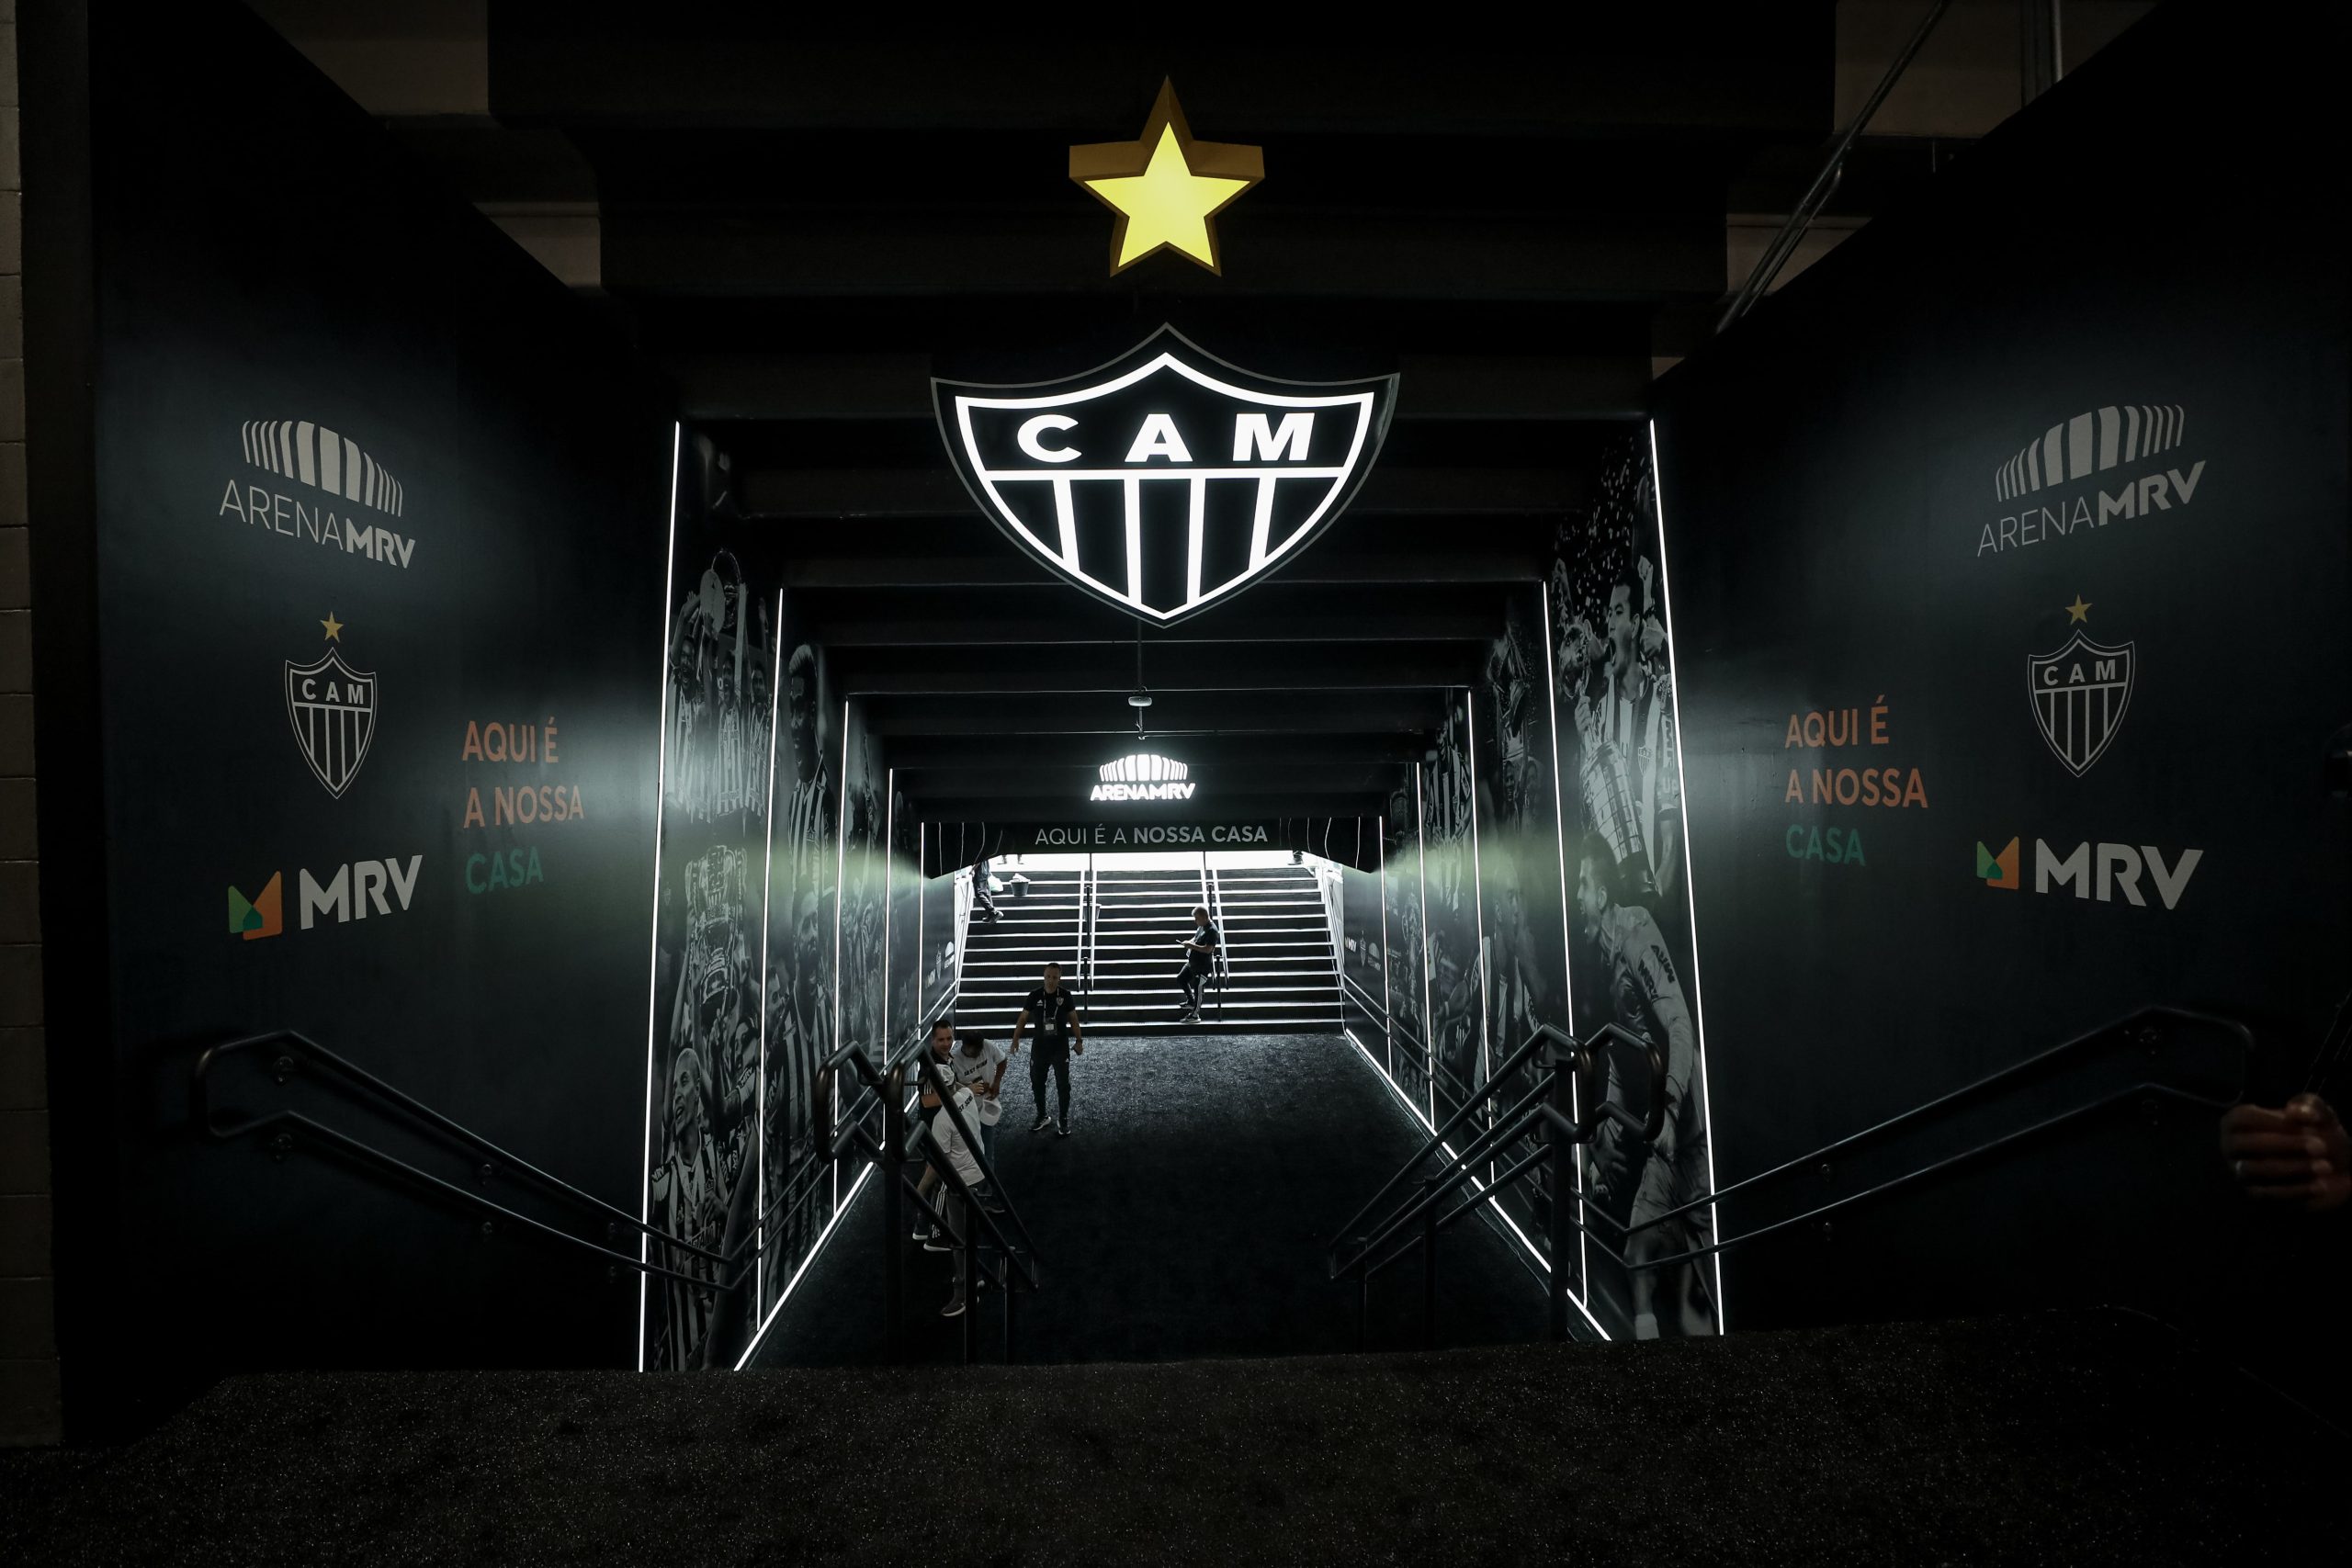 Estádio do Atlético-MG (Foto: Divulgação/Arena MRV)